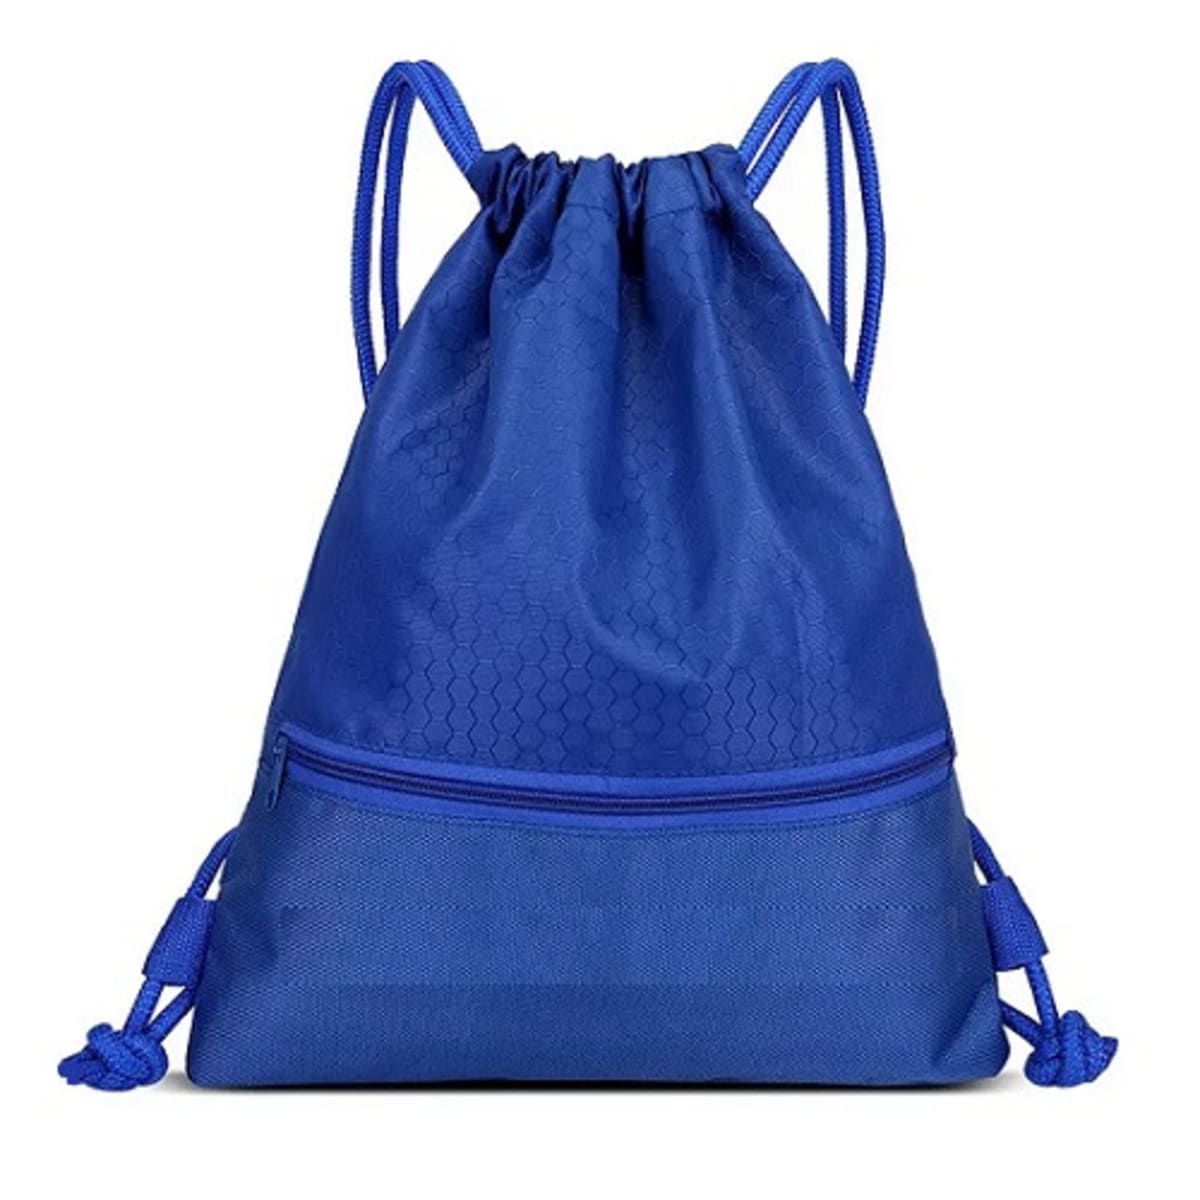 Aggregate more than 150 backpack sack bags - kidsdream.edu.vn